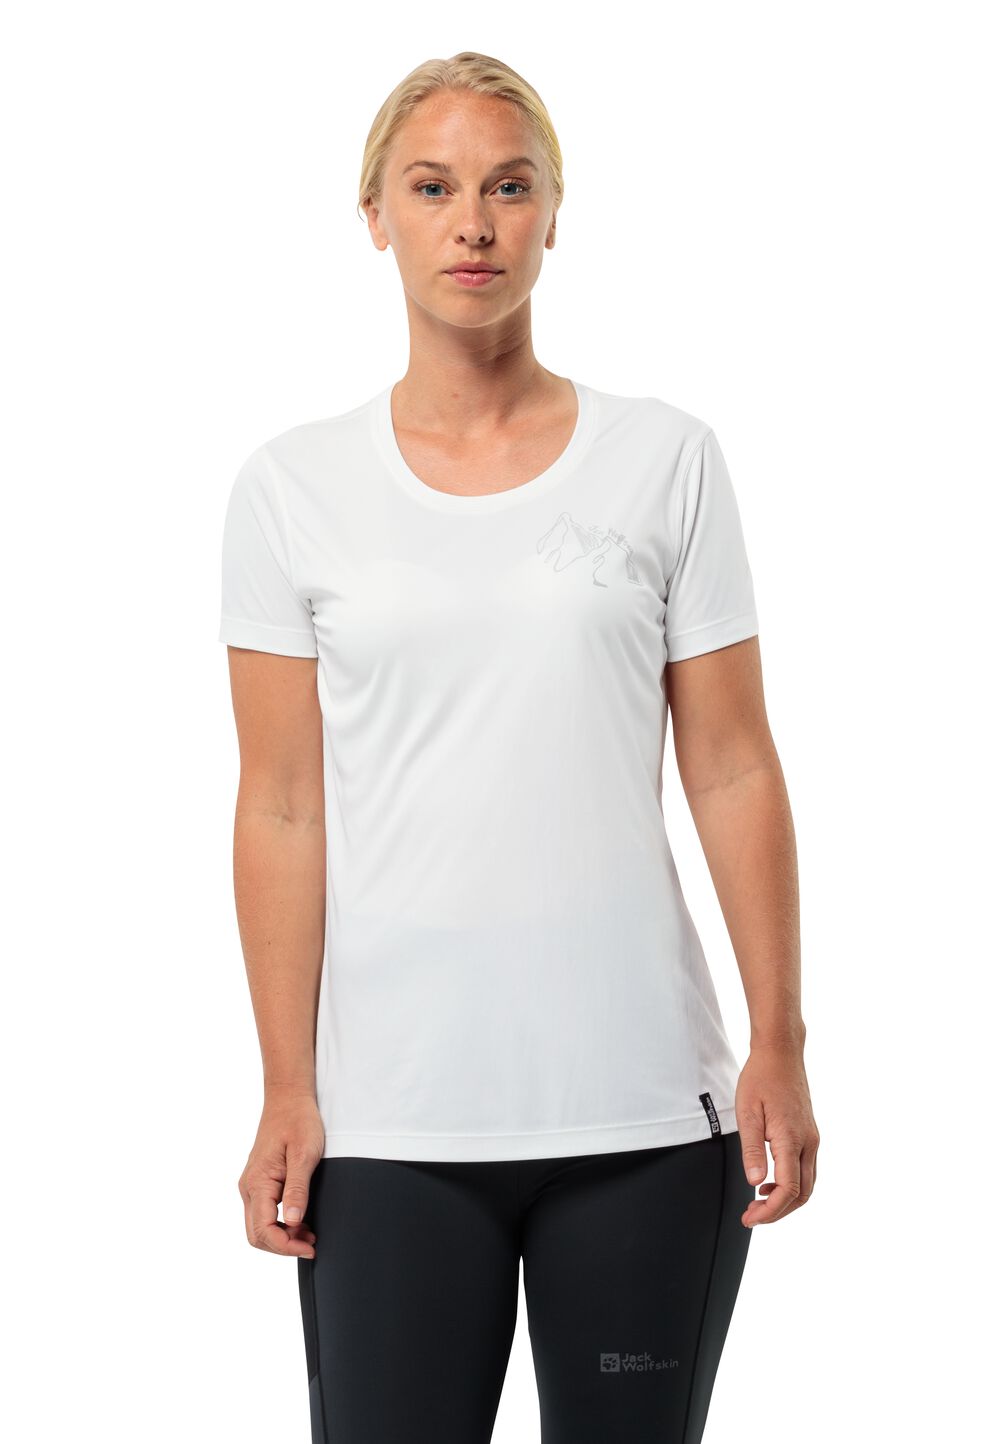 Jack Wolfskin Peak Graphic T-Shirt Women Functioneel shirt Dames XXL wit stark white